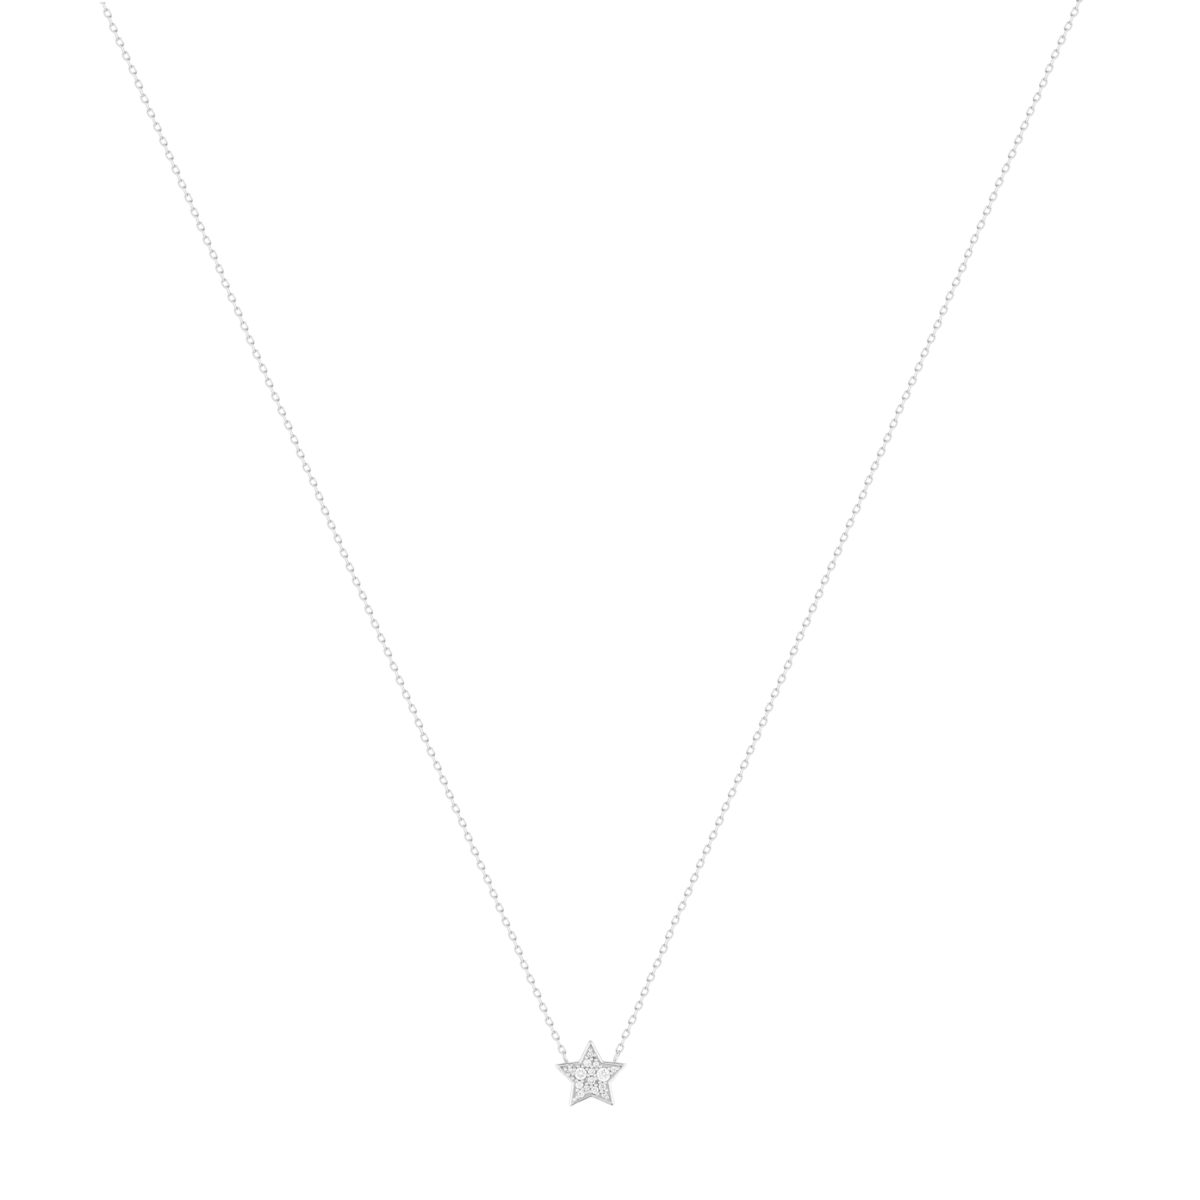 Collier argent 925, motif étoile zirconias 45 cm - vue 2